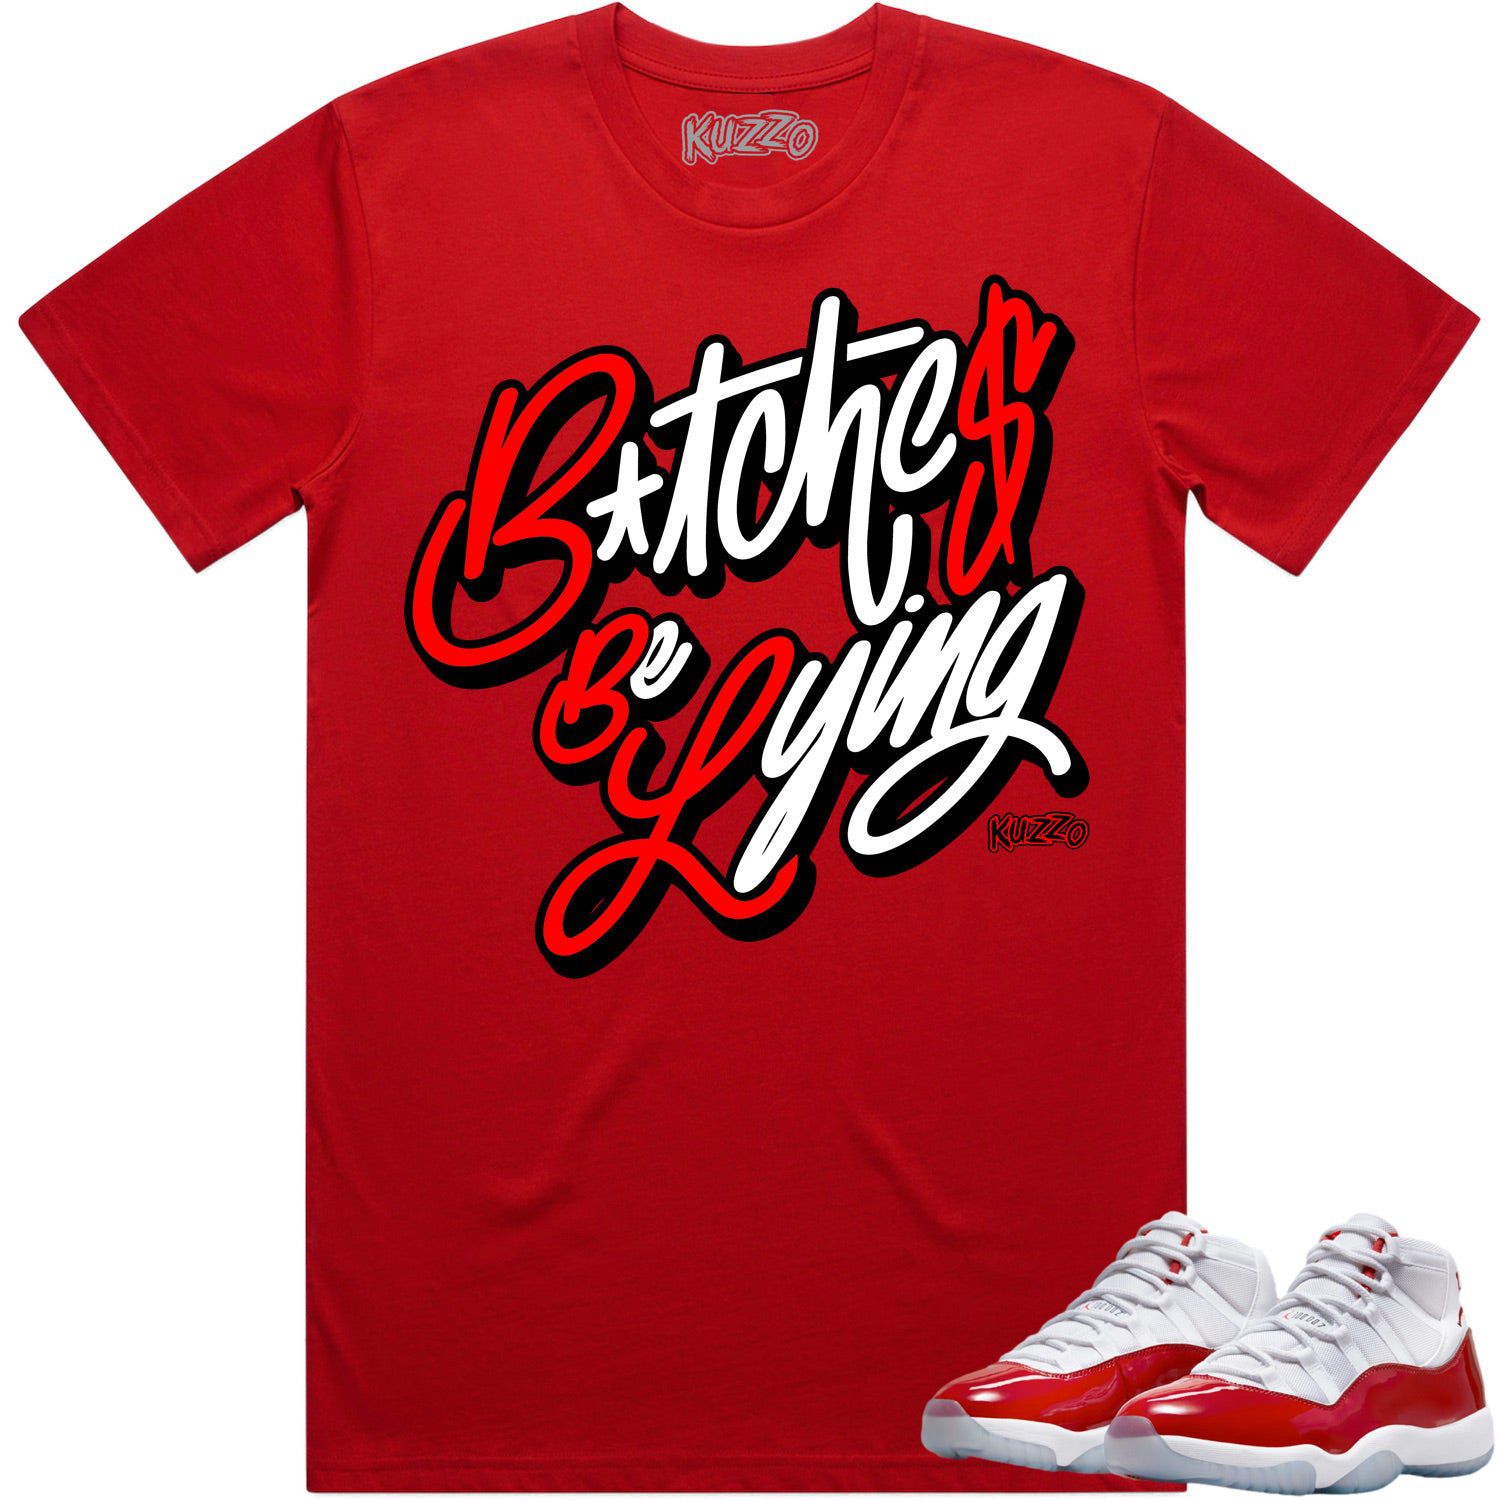 Cherry 11s Shirt - Jordan Retro 11 Cherry Shirts - Red BBL